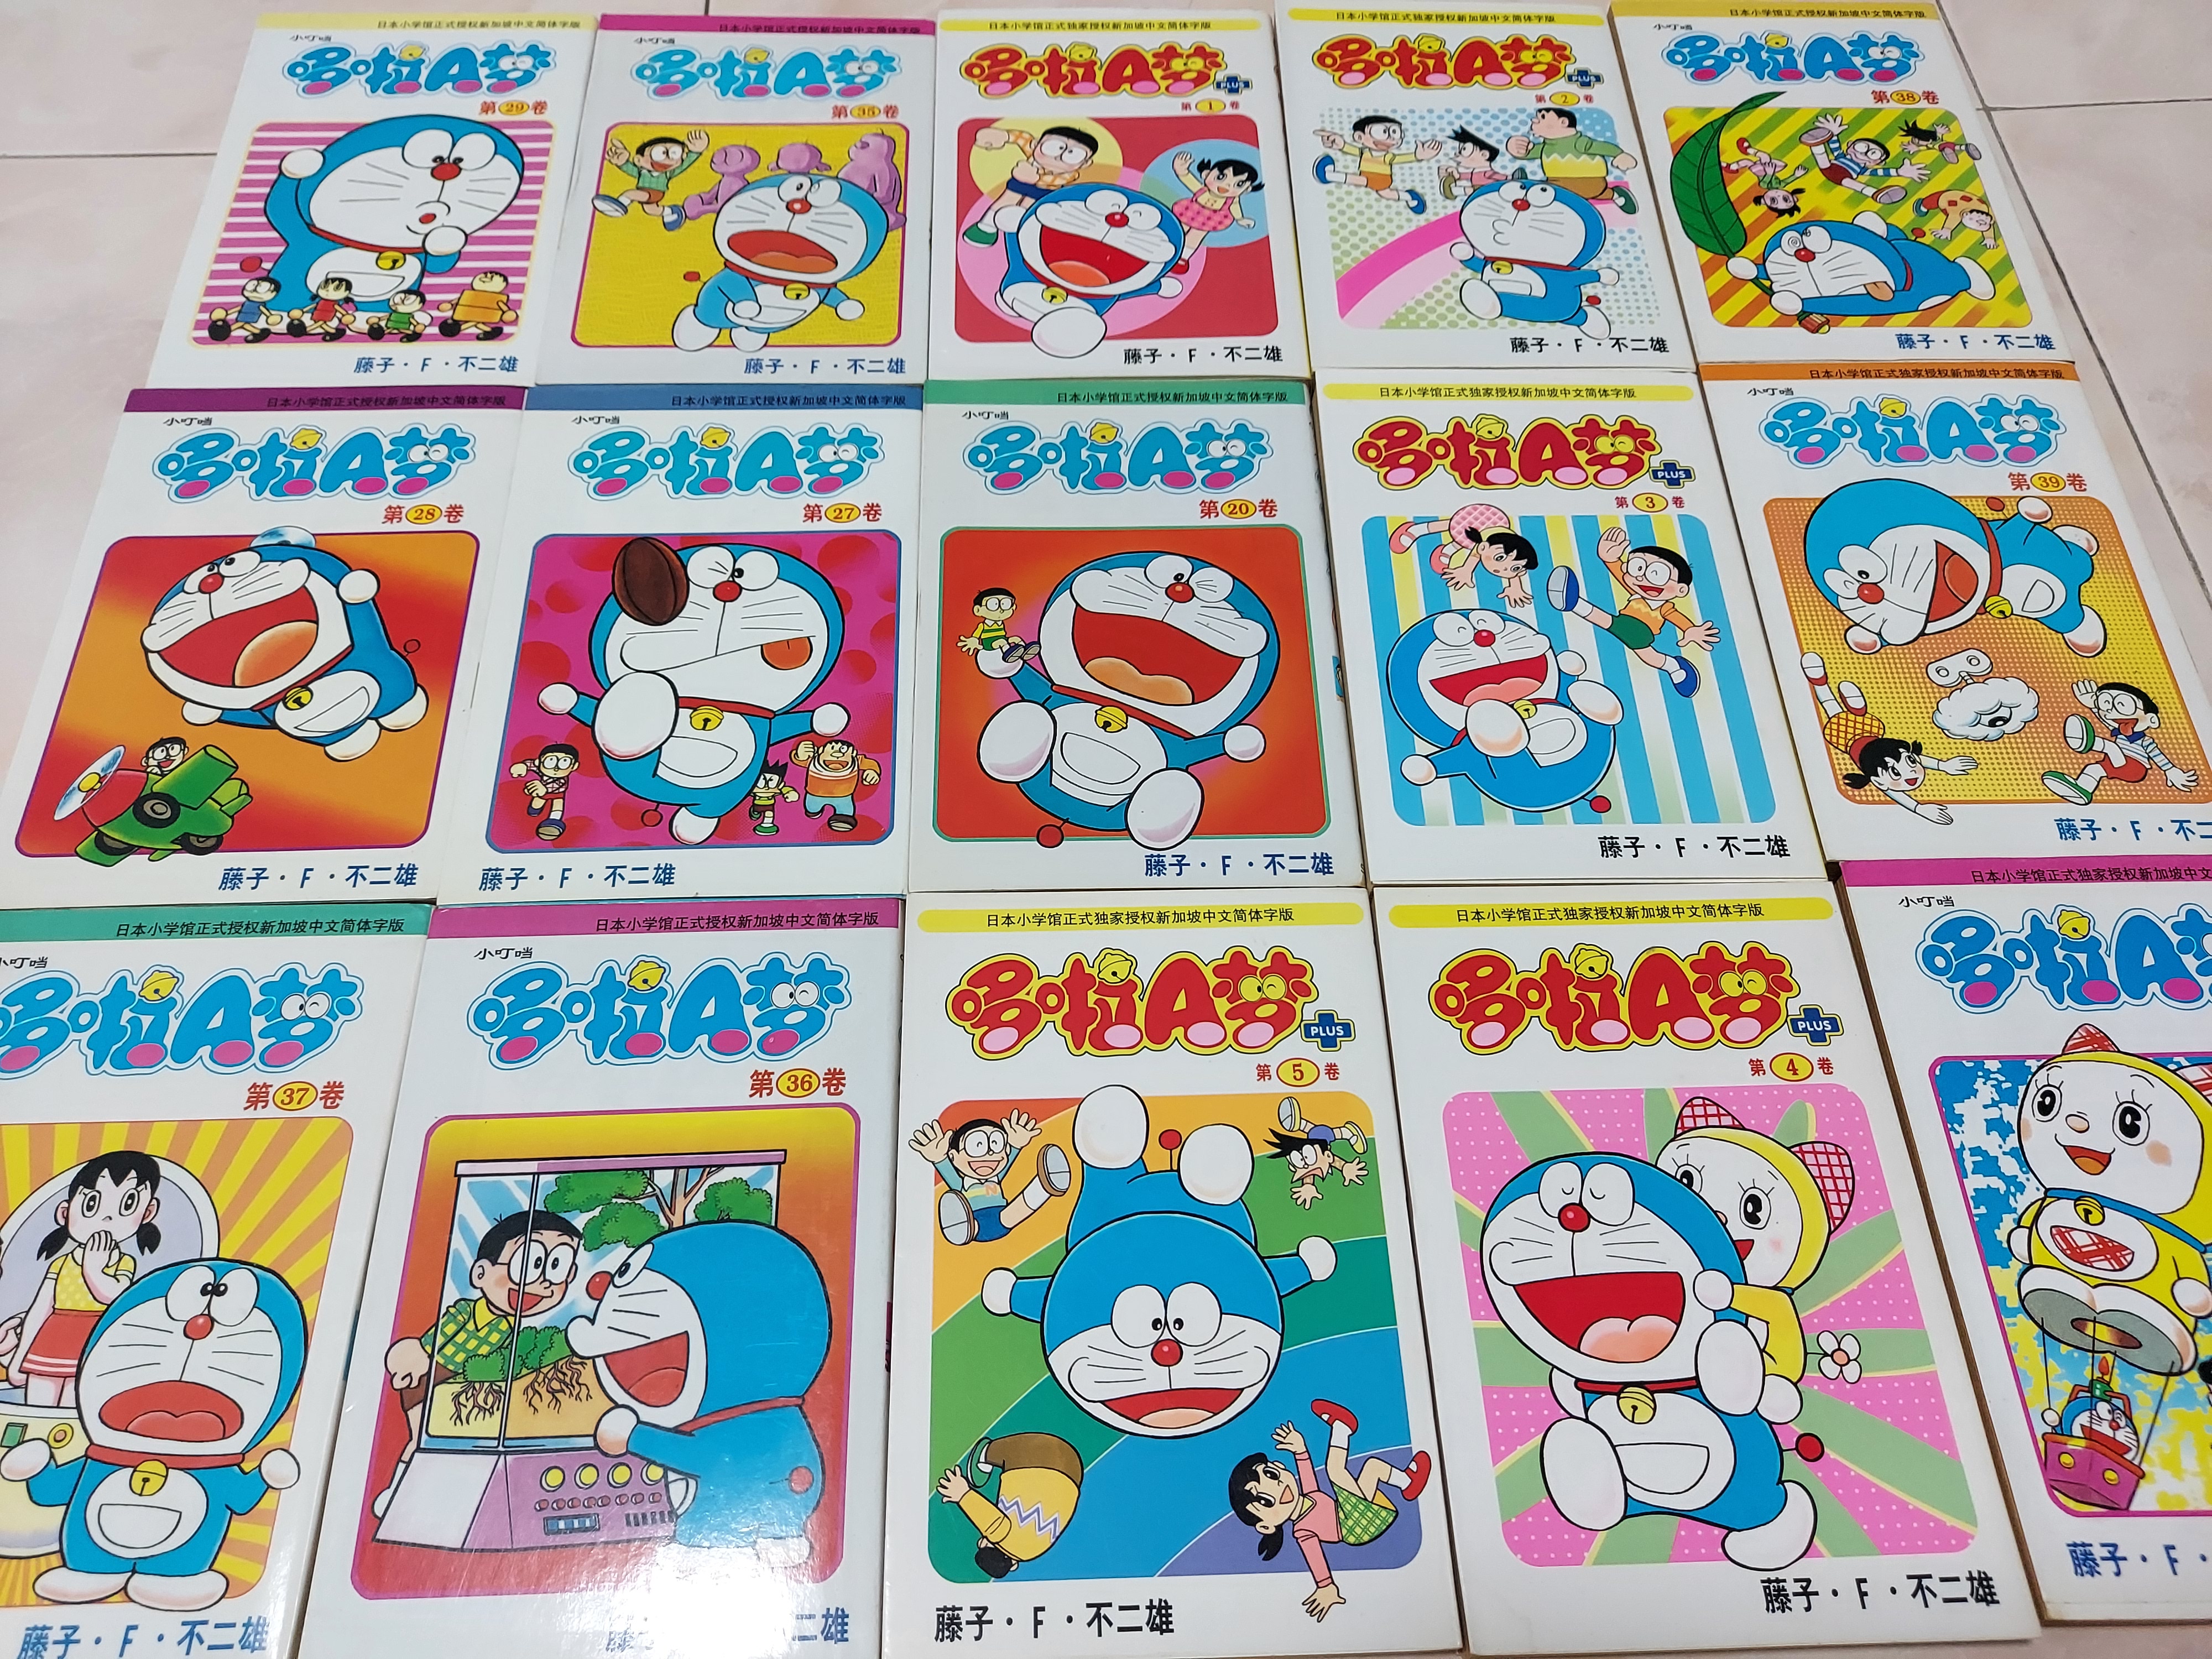 Doraemon Comic Books